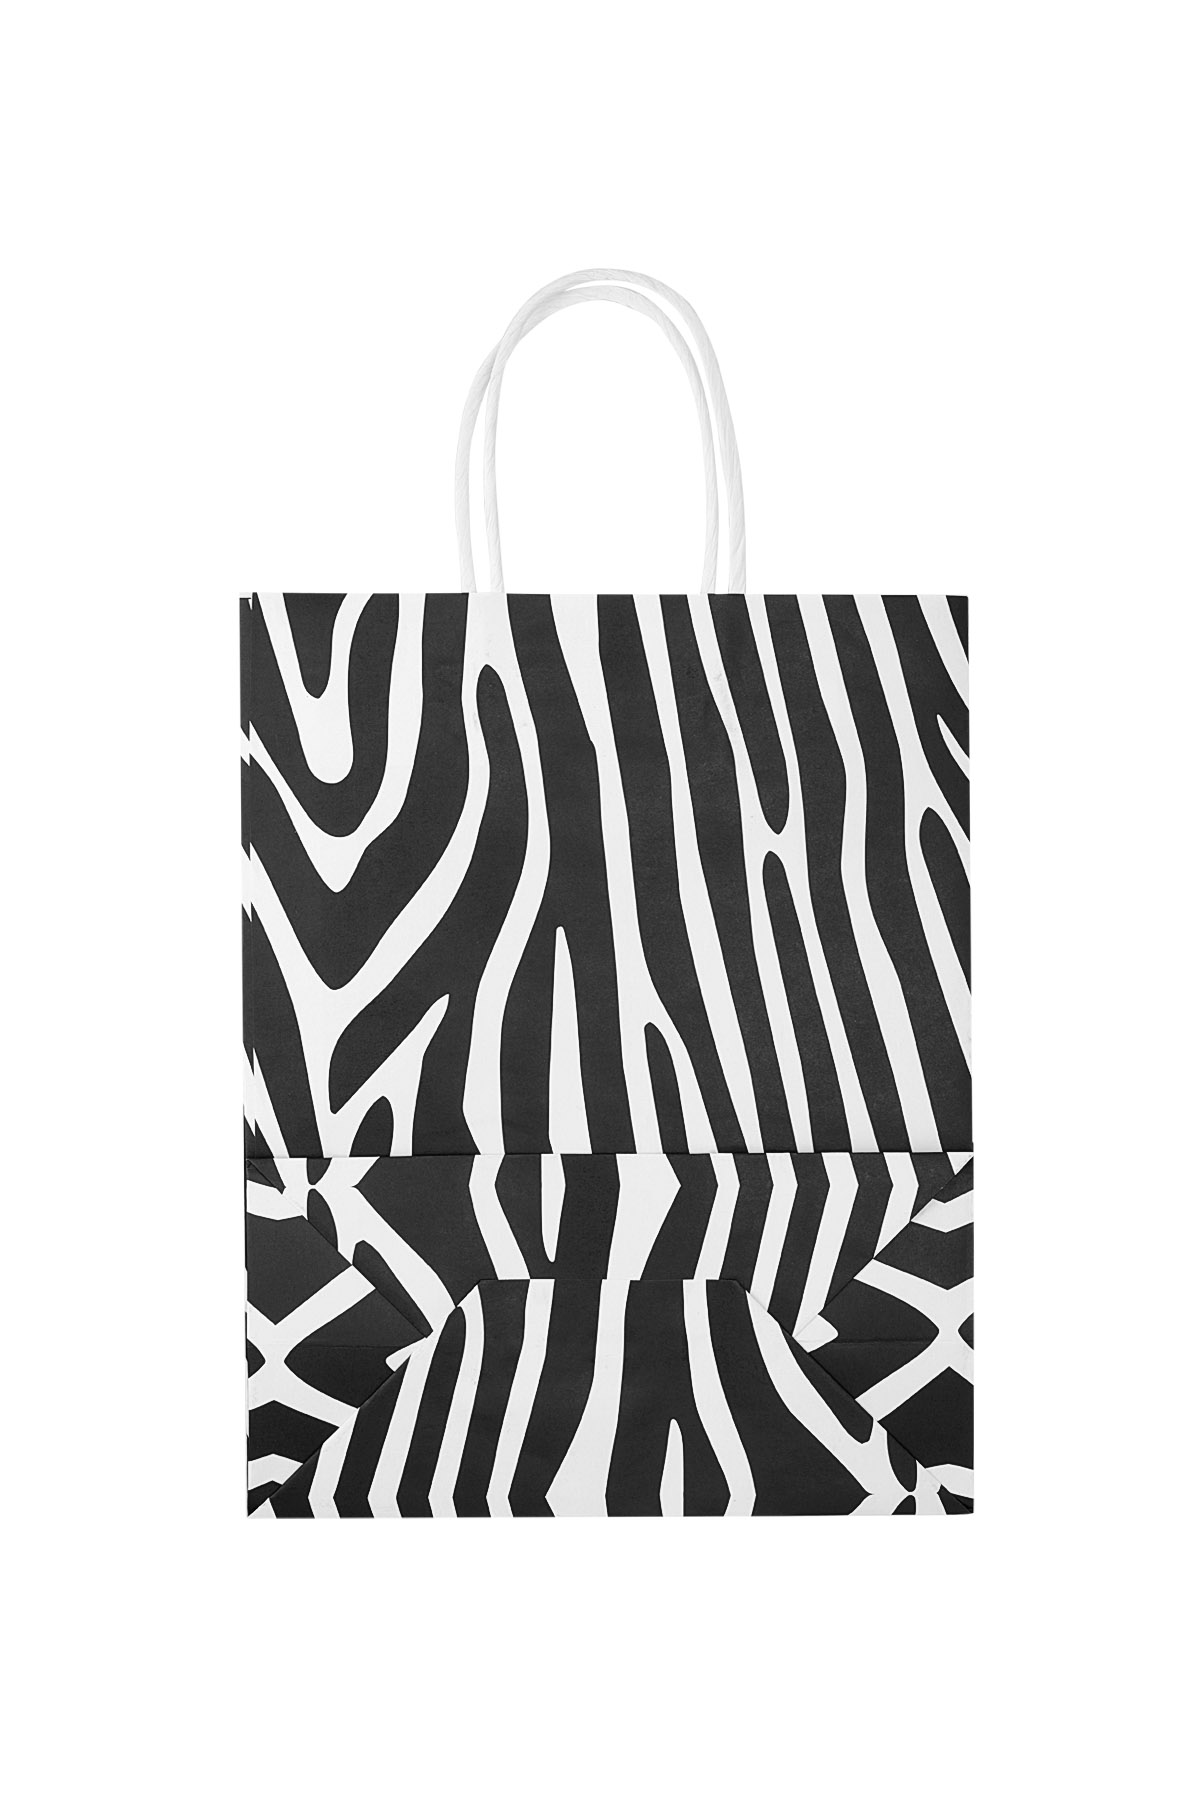 Tüten Zebra 50 Stück - schwarz/weißes Papier Bild2